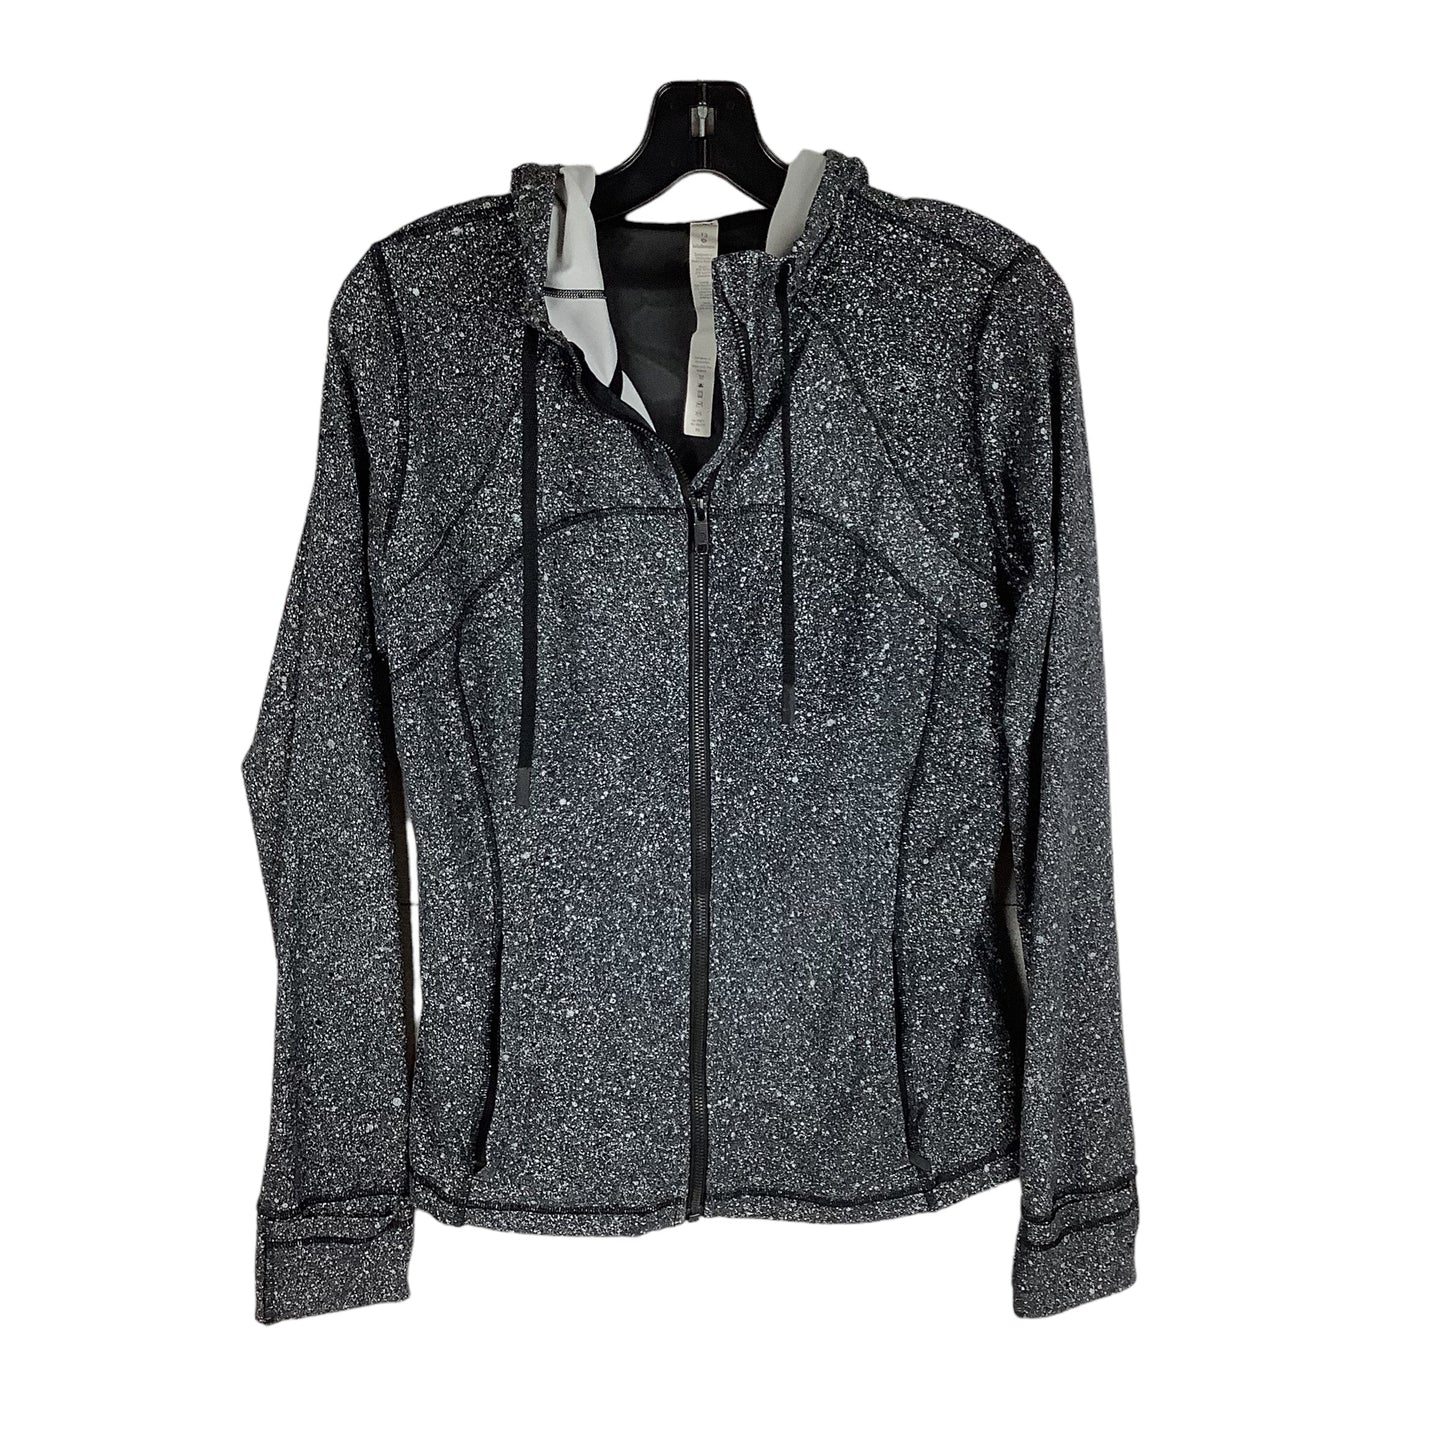 Grey Athletic Jacket Lululemon, Size 12